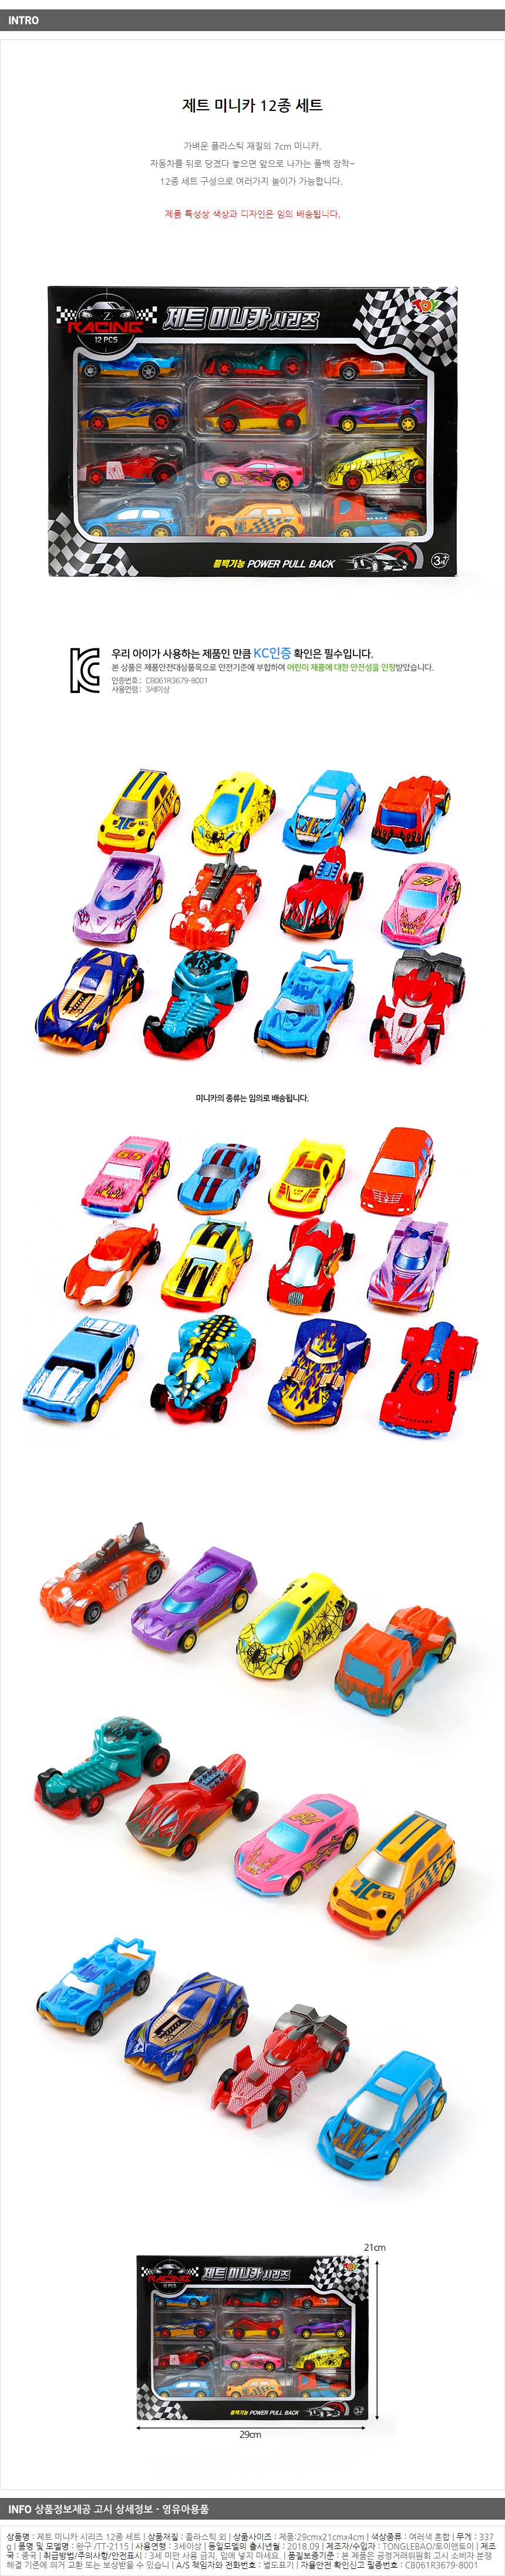 제트 미니카 시리즈 12종/풀백 자동차 장난감